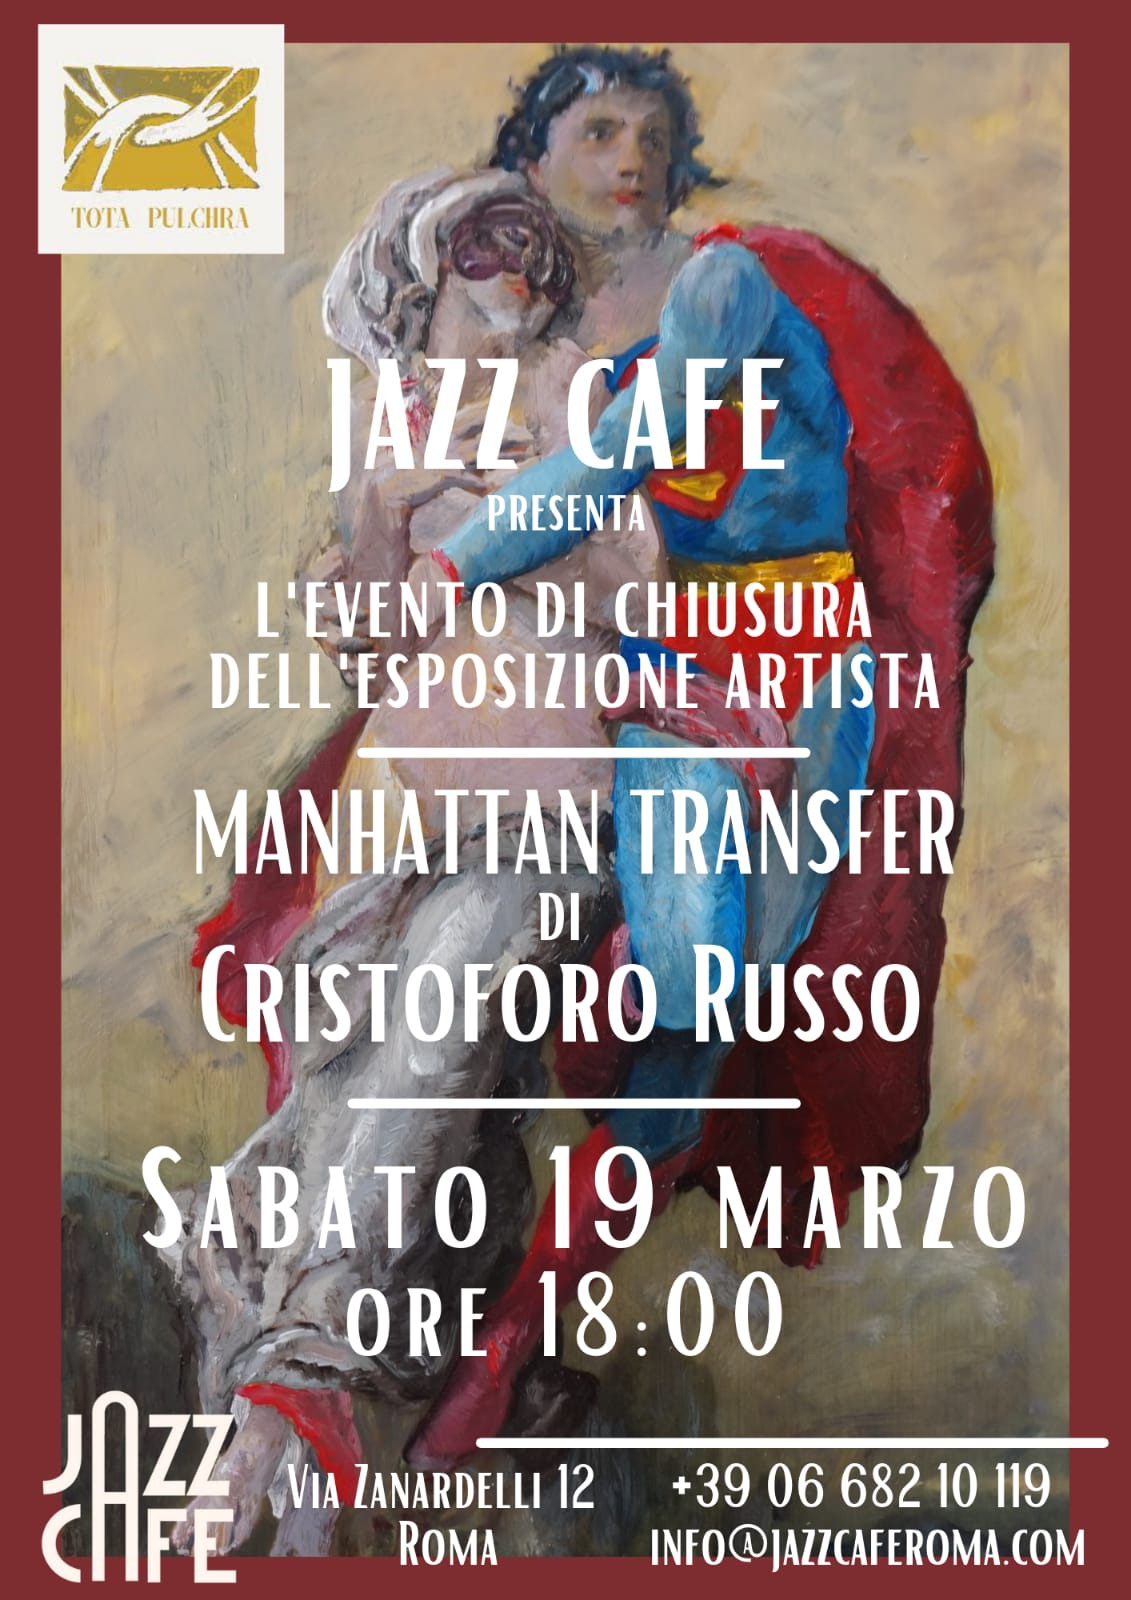 Evento di chiusura dell'esposizione “Manhattan Transfer” di Cristoforo Russo al Jazz Cafè di Roma